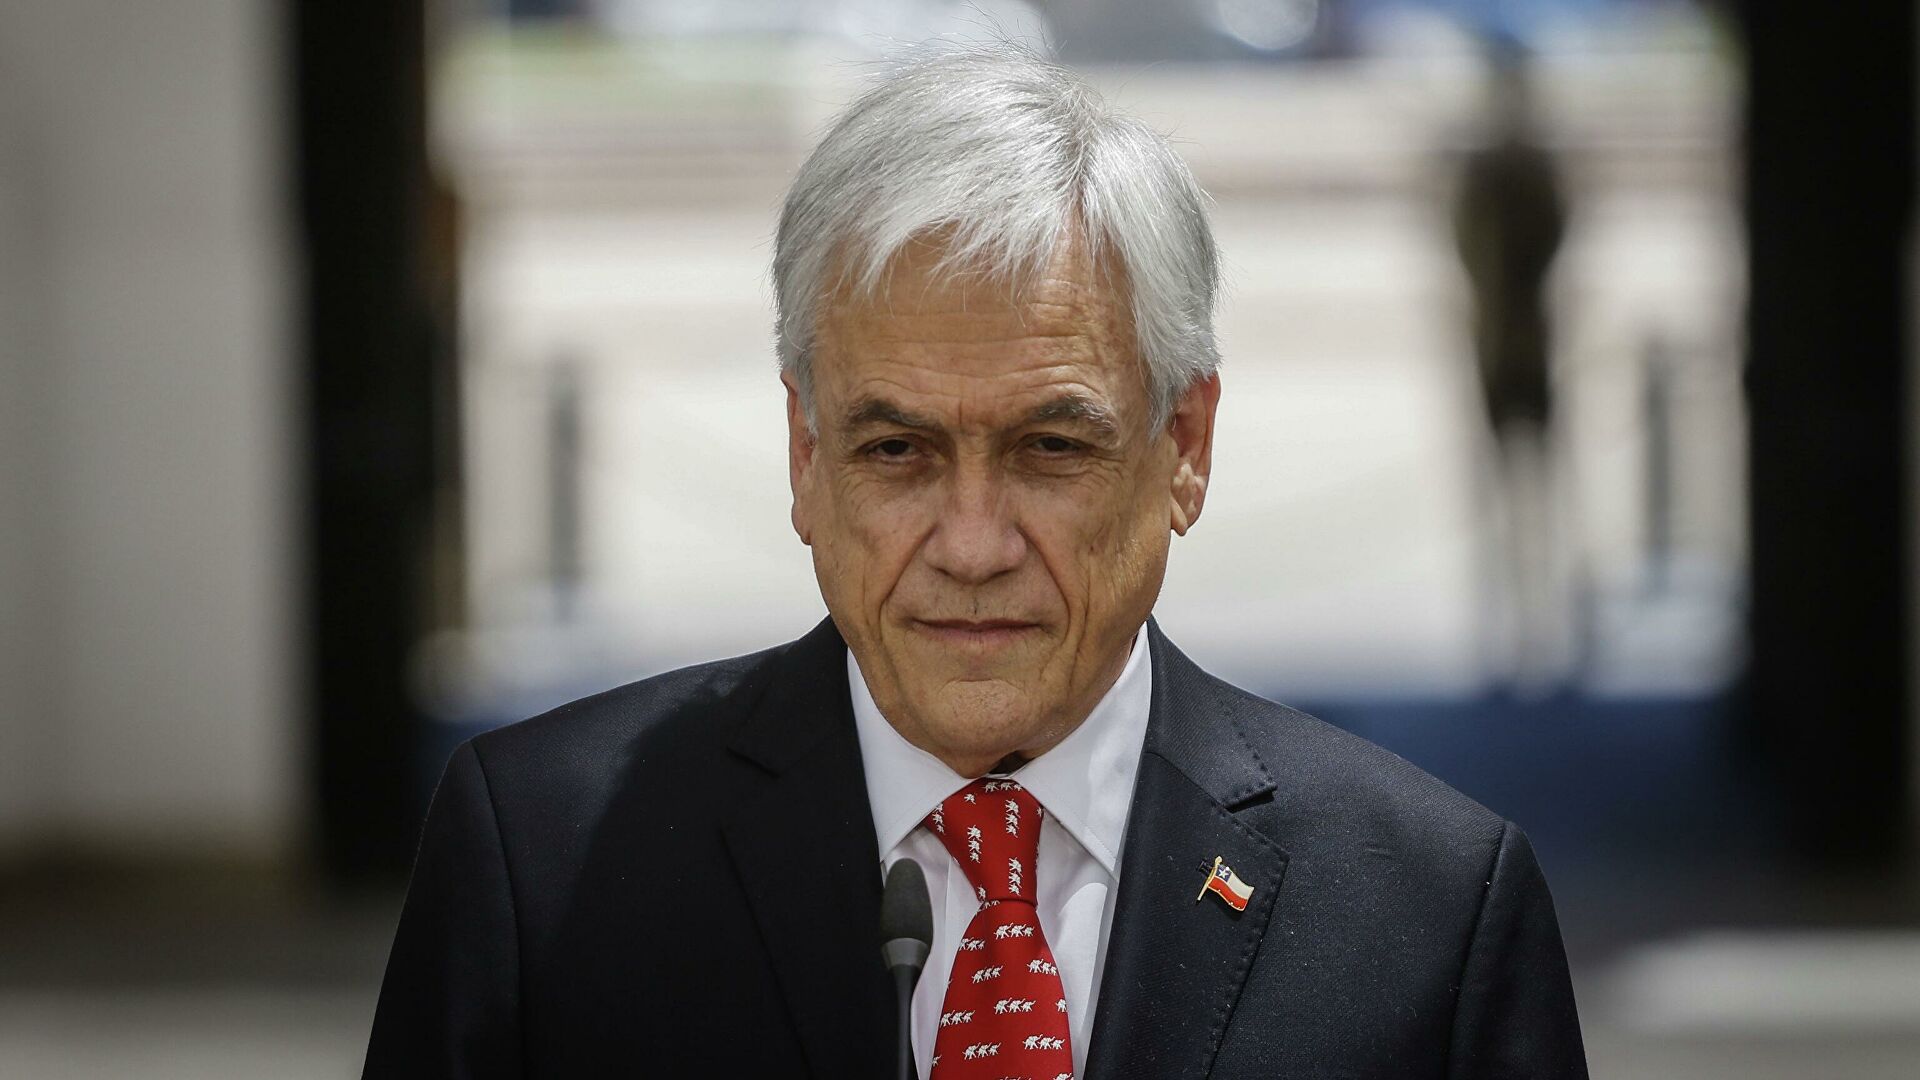  El Senado inicia un juicio político contra Piñera por negocios en paraísos fiscales